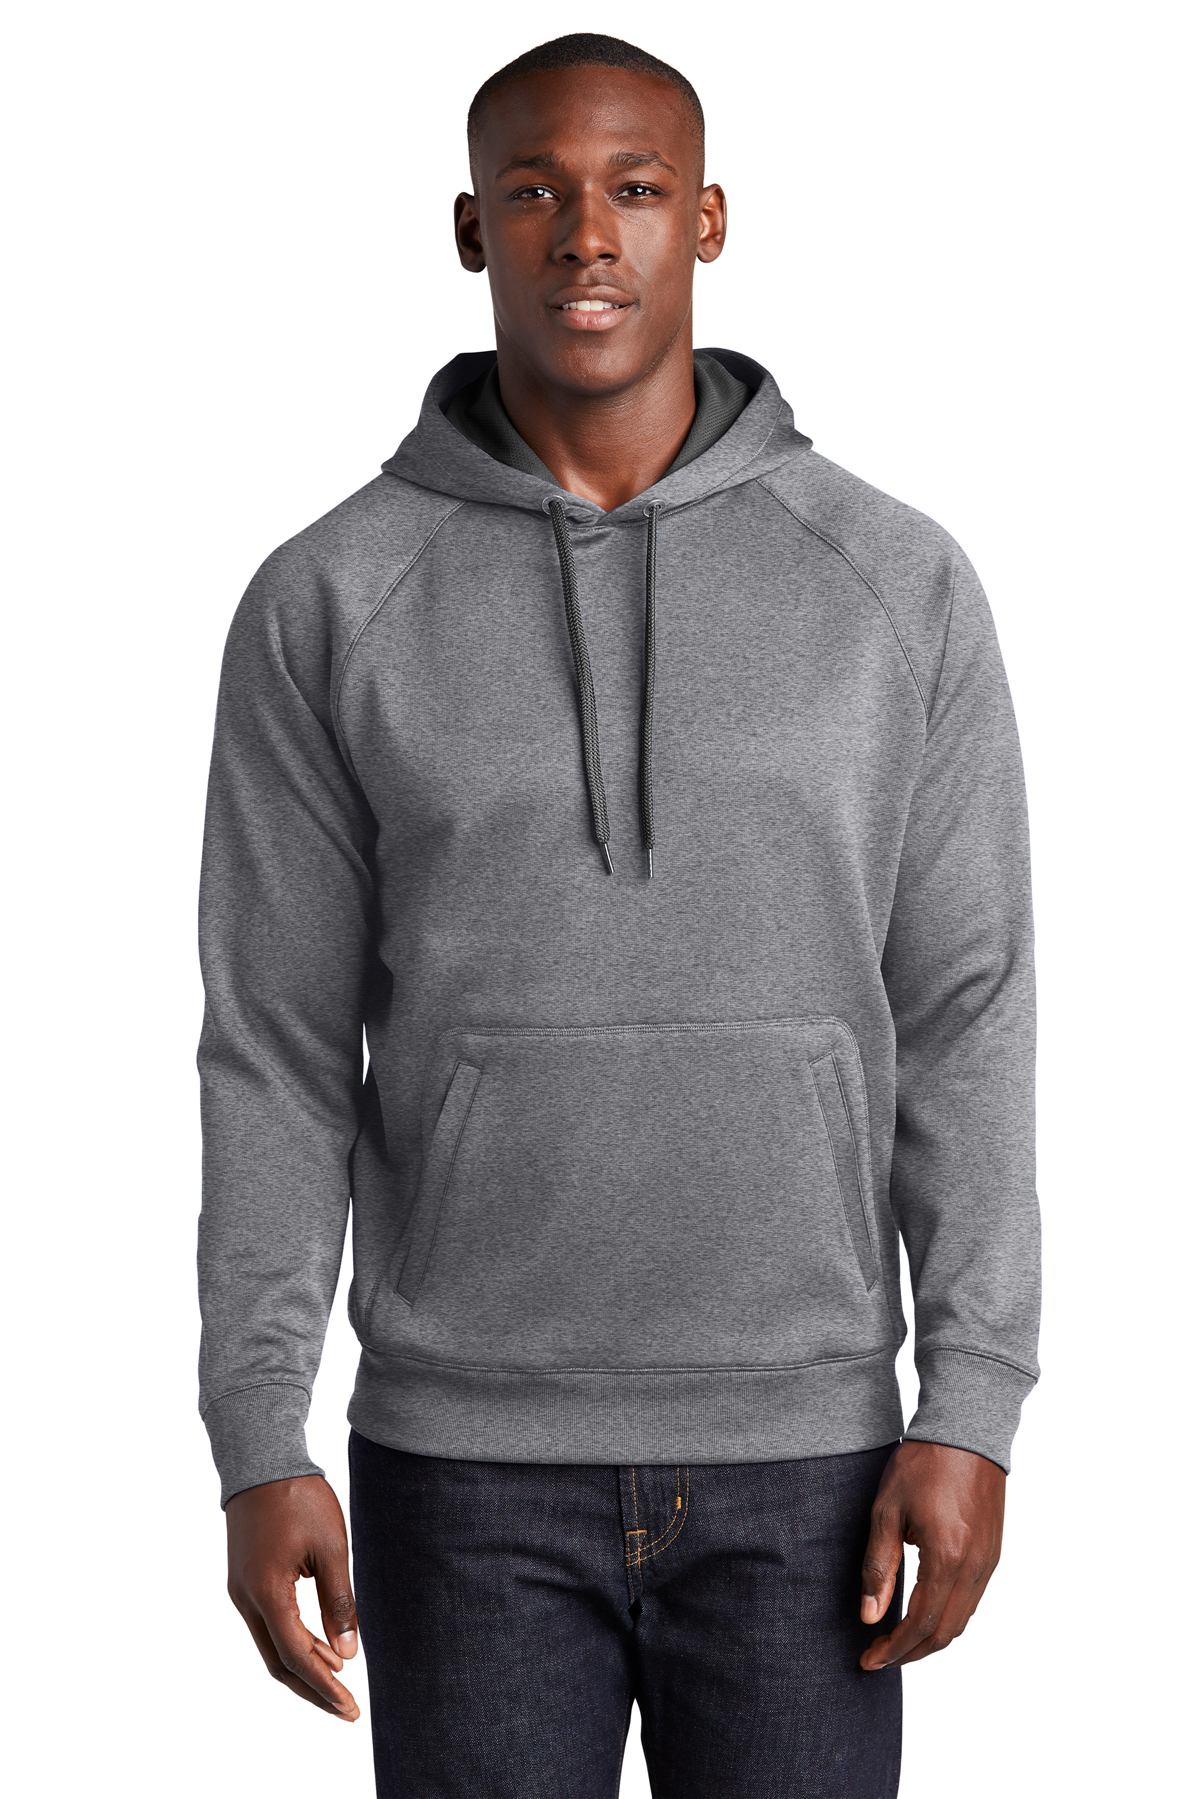 Sport-Tek Tech Fleece Hooded Sweatshirt | Product | SanMar